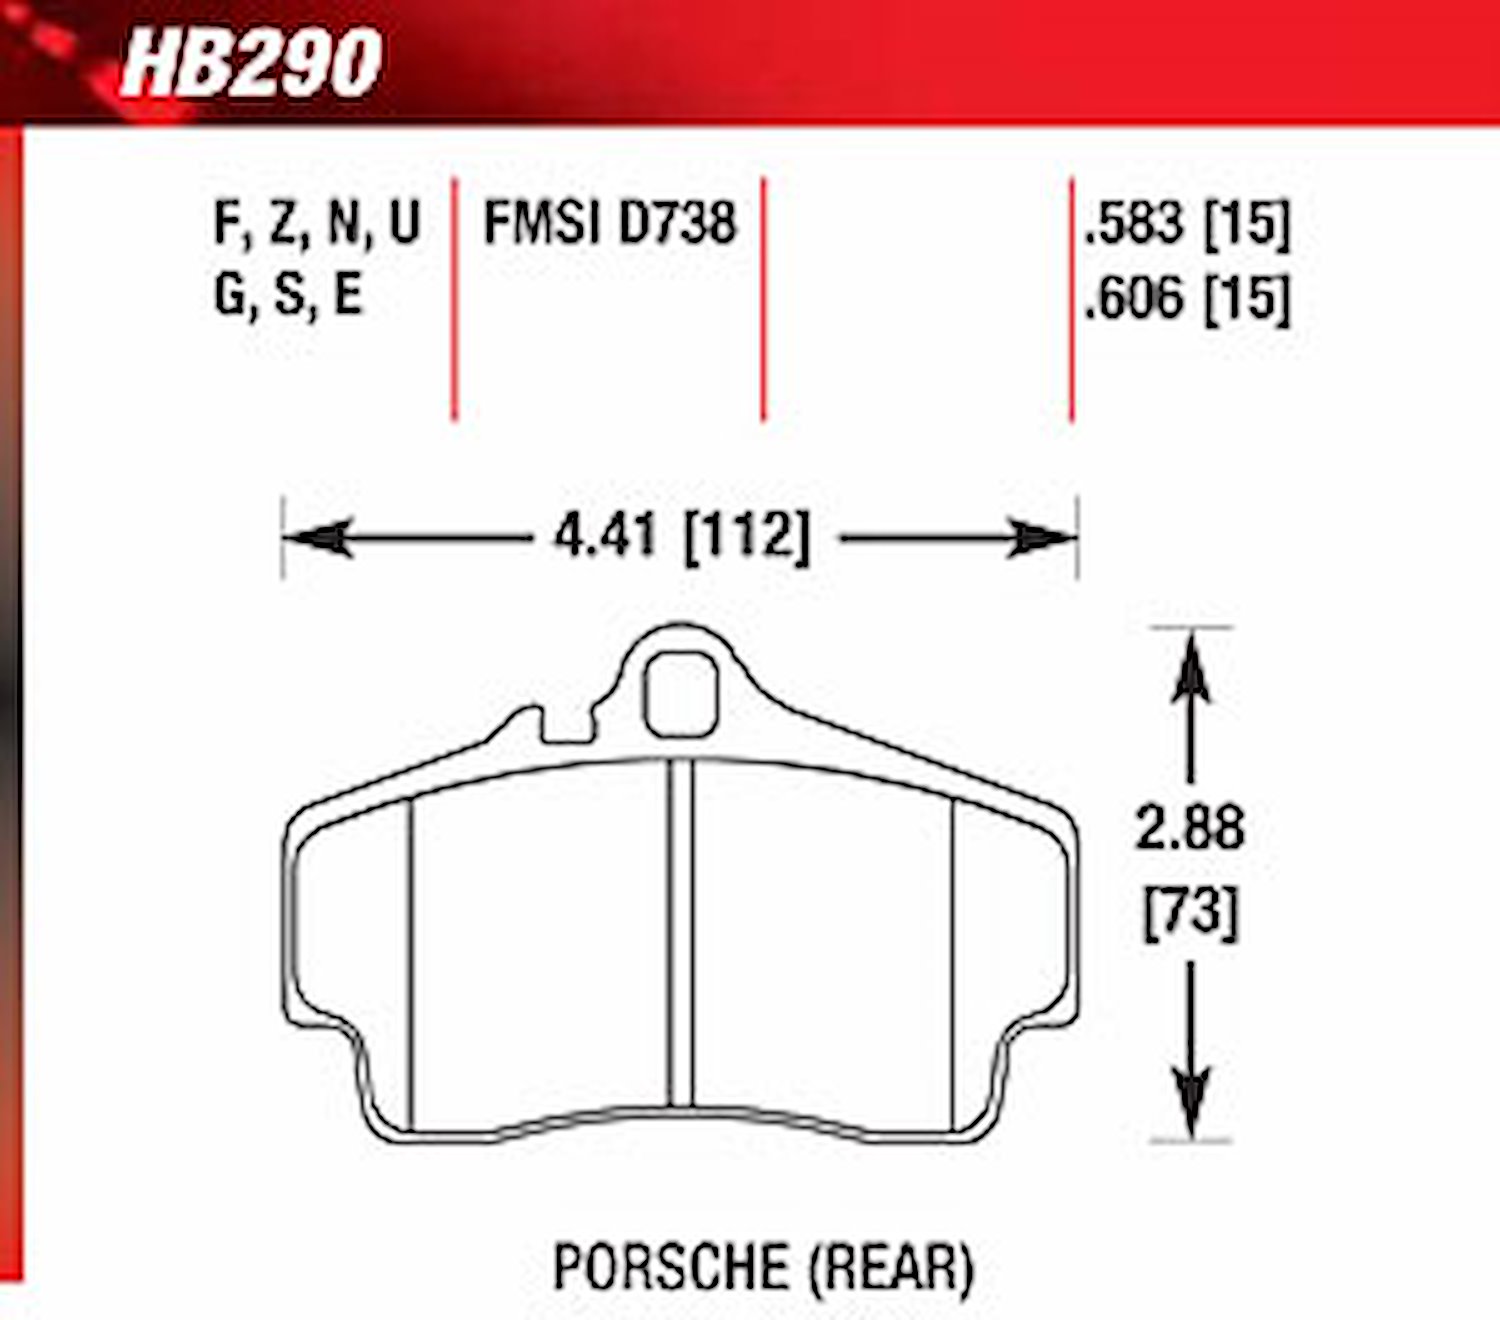 Blue 9012 Disk Brake Pads Porsche 911, Boxster, Cayman